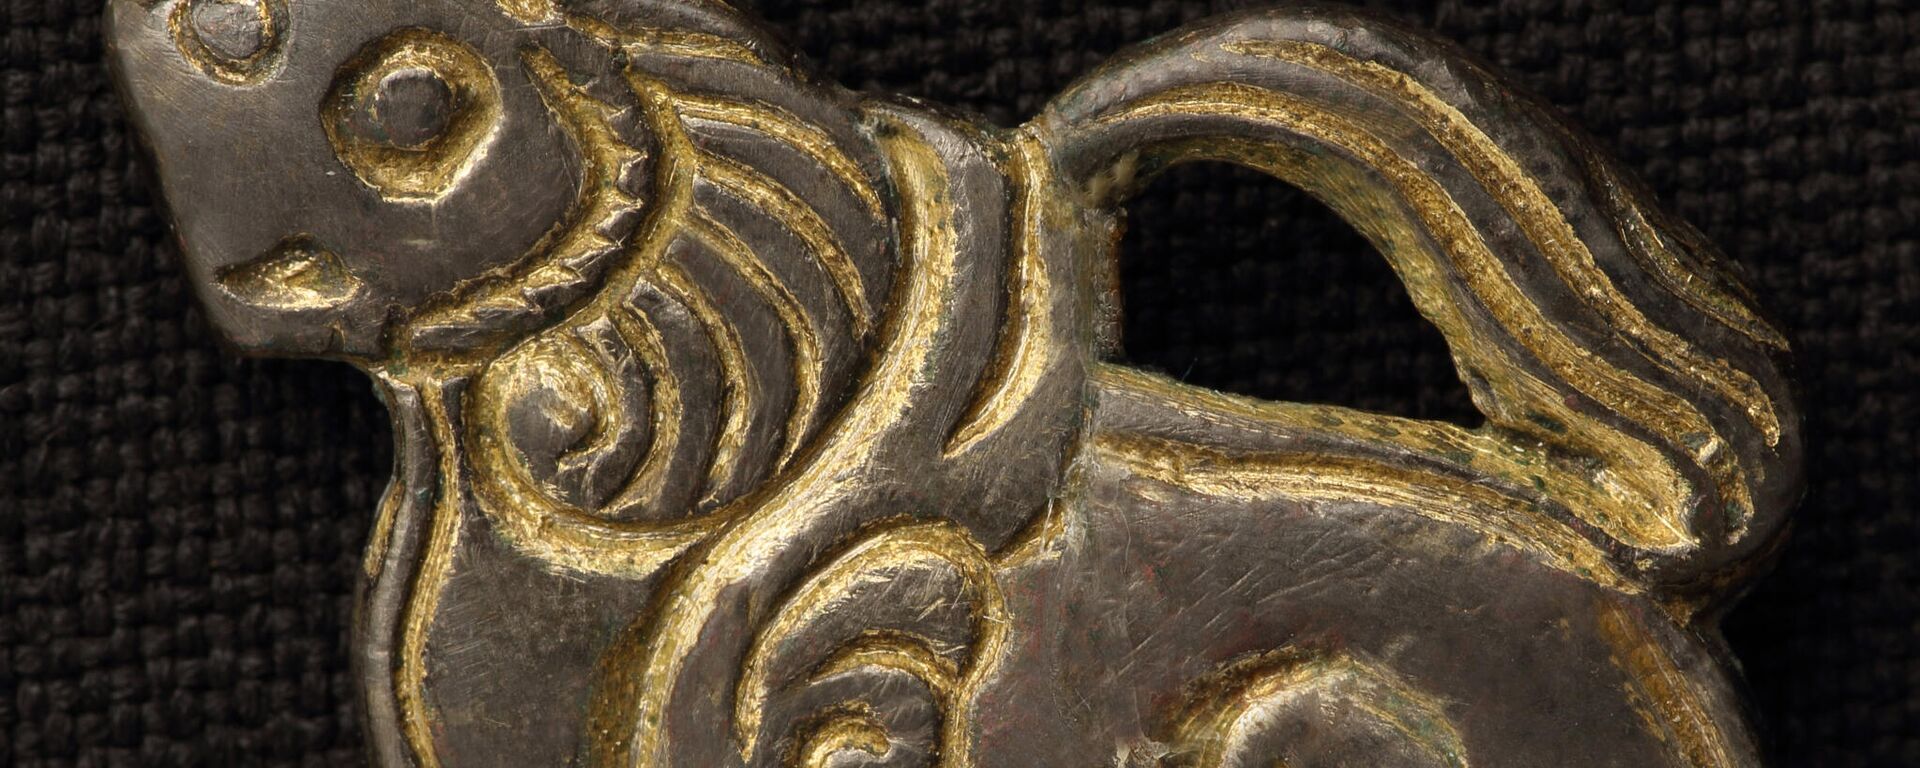 Бляха-накладка на сумочку в виде крылатого льва (вторая половина IX - первая половина X века нашей эры) - Sputnik Узбекистан, 1920, 14.12.2021